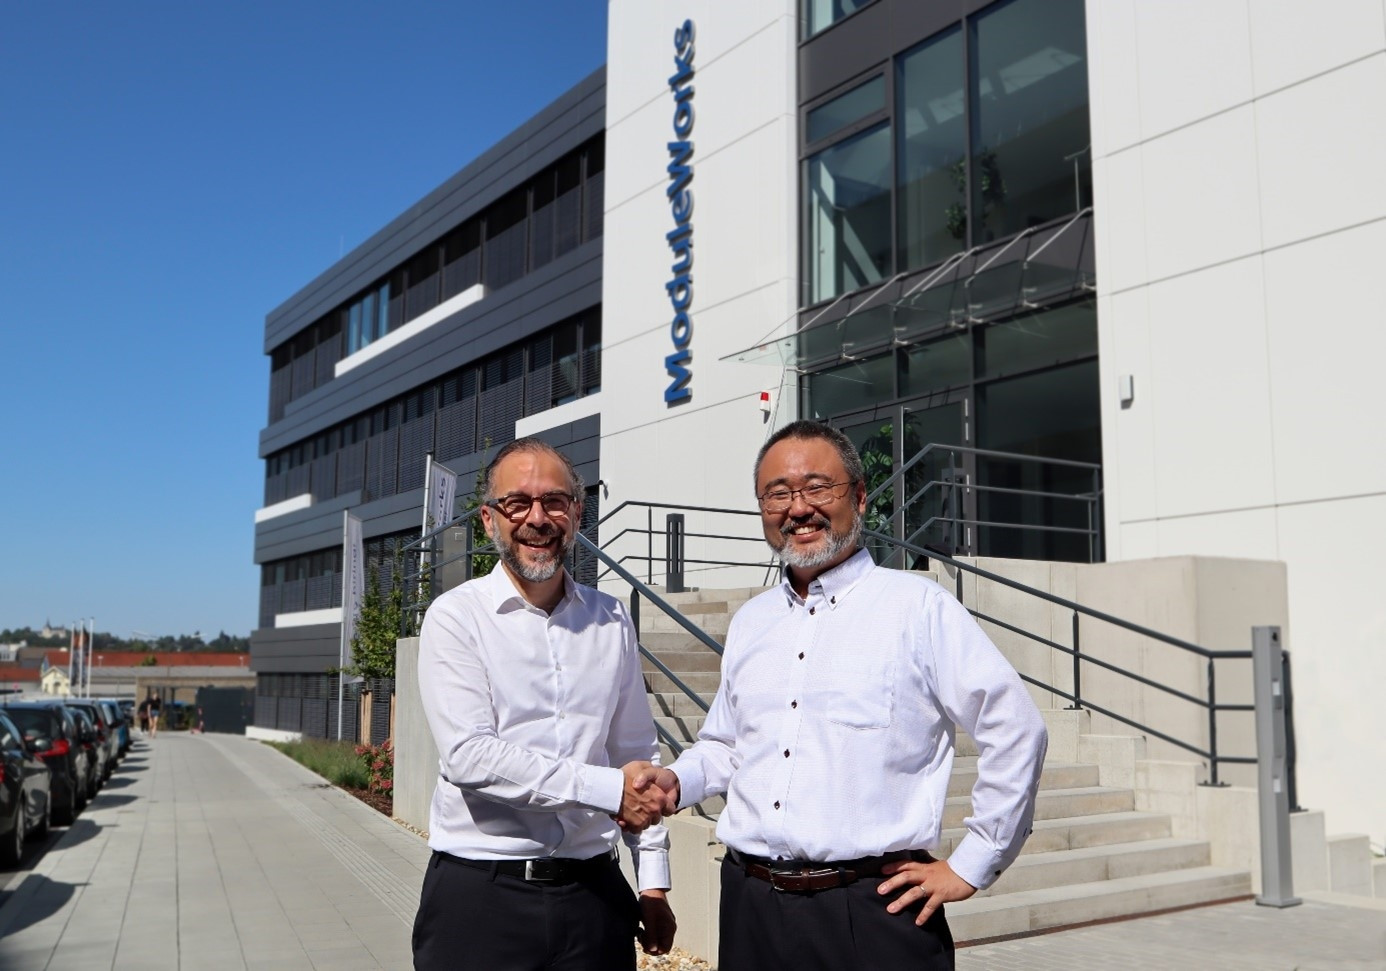 Yavuz Murtezaoglu, Gründer und Geschäftsführer von Module Works (links), und Yoshihiro Oniuda, Senior Manager der DX Promotion Project Group bei Mitsubishi Electric (rechts), vereinbaren die Partnerschaft in der Module Works-Zentrale in Aachen.